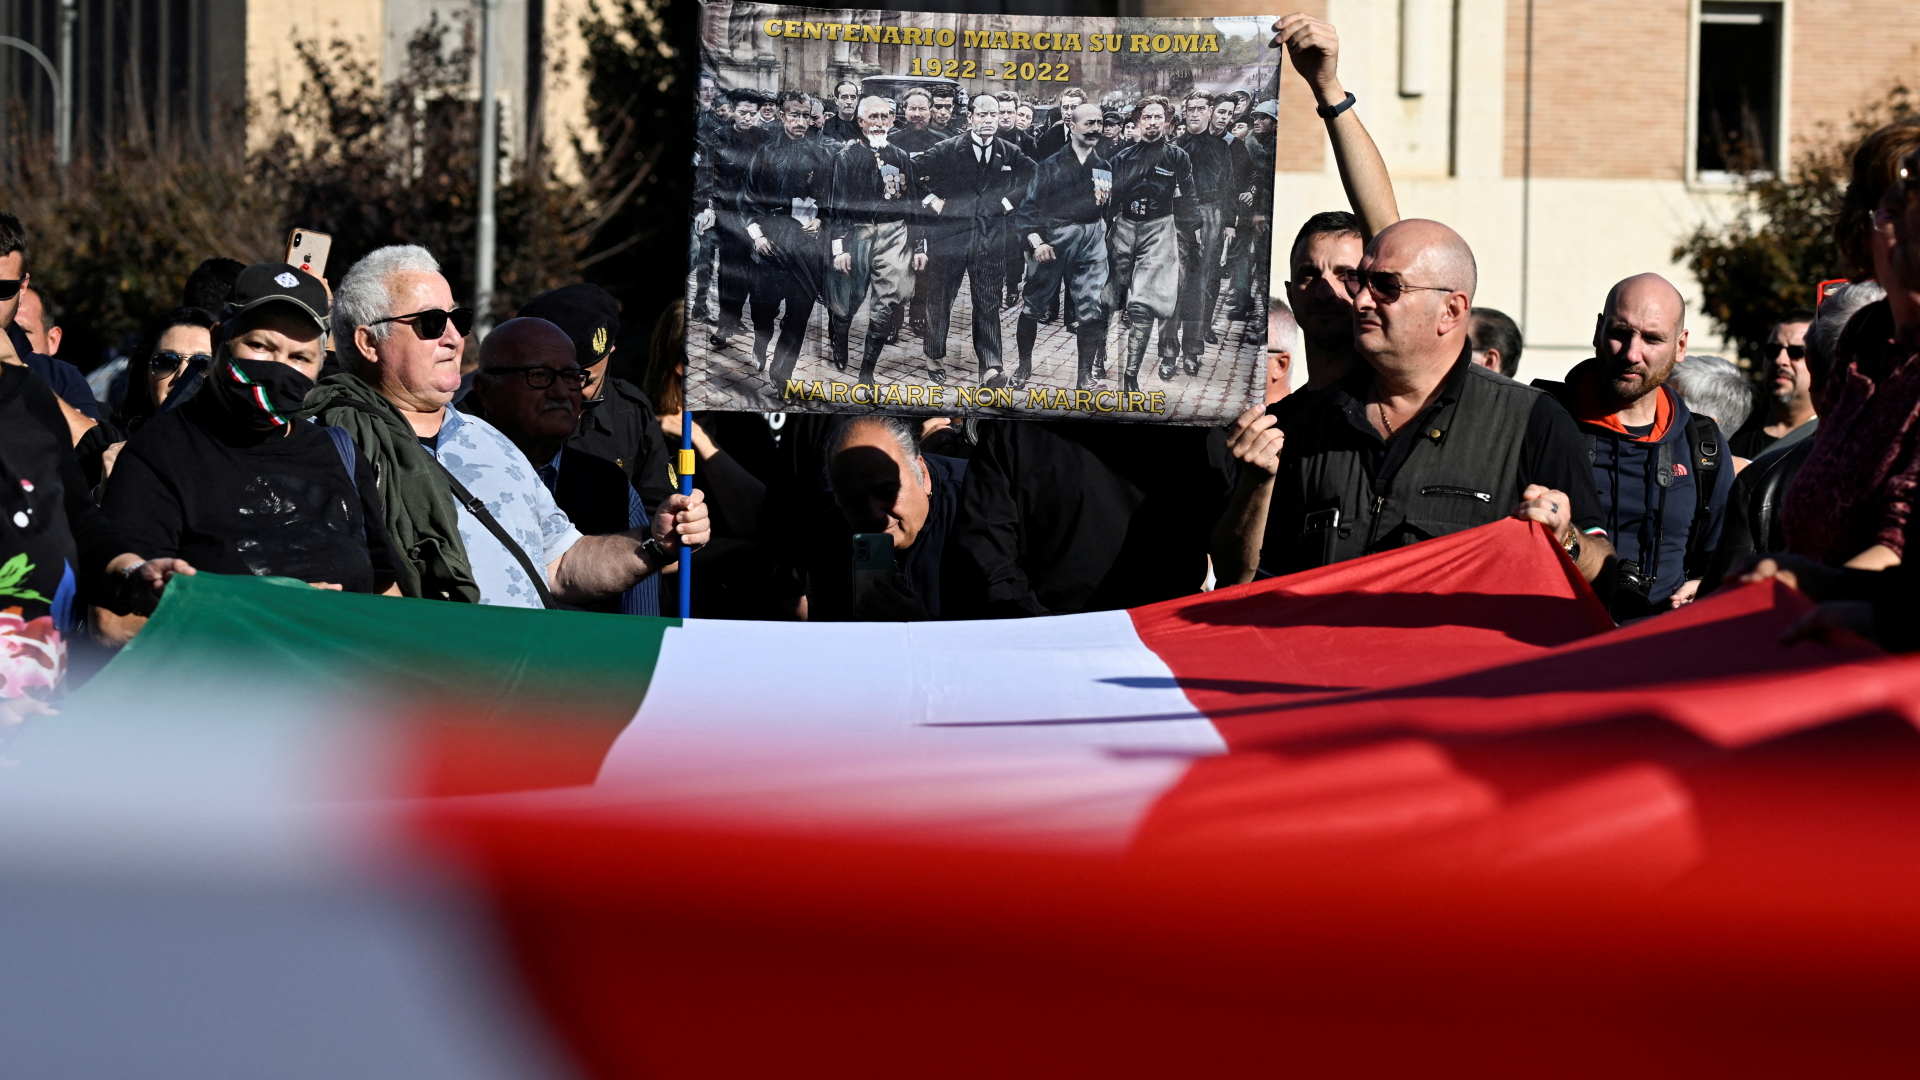 Fascismo in Italia: migliaia di persone in pellegrinaggio alla tomba di Mussolini